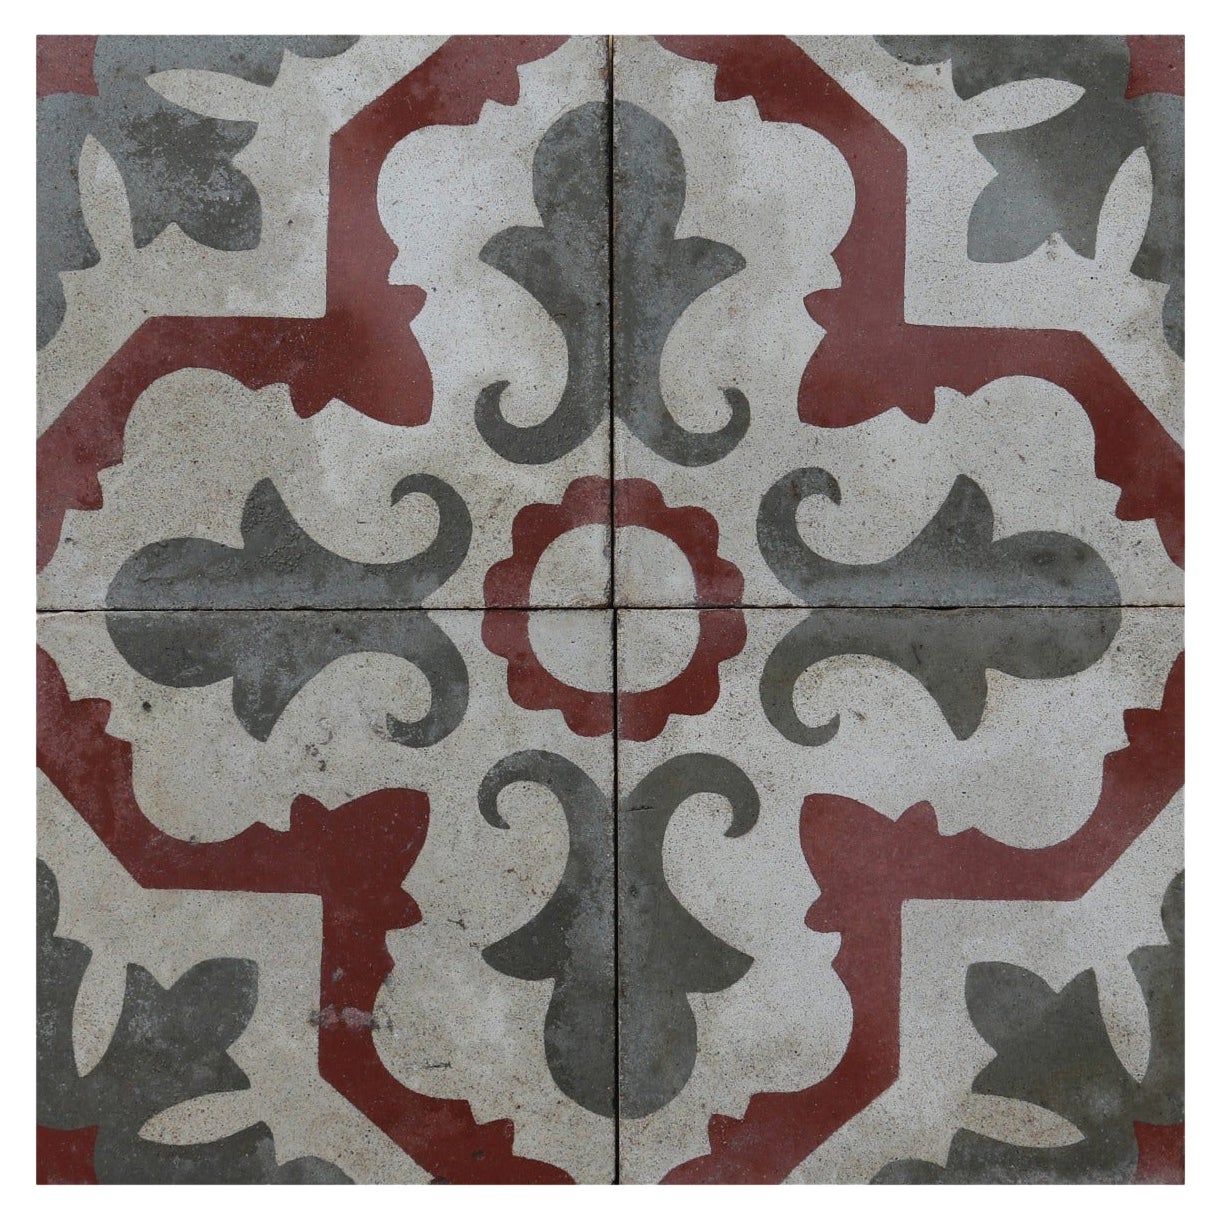 Set of Reclaimed Patterned Encaustic Floor Tiles